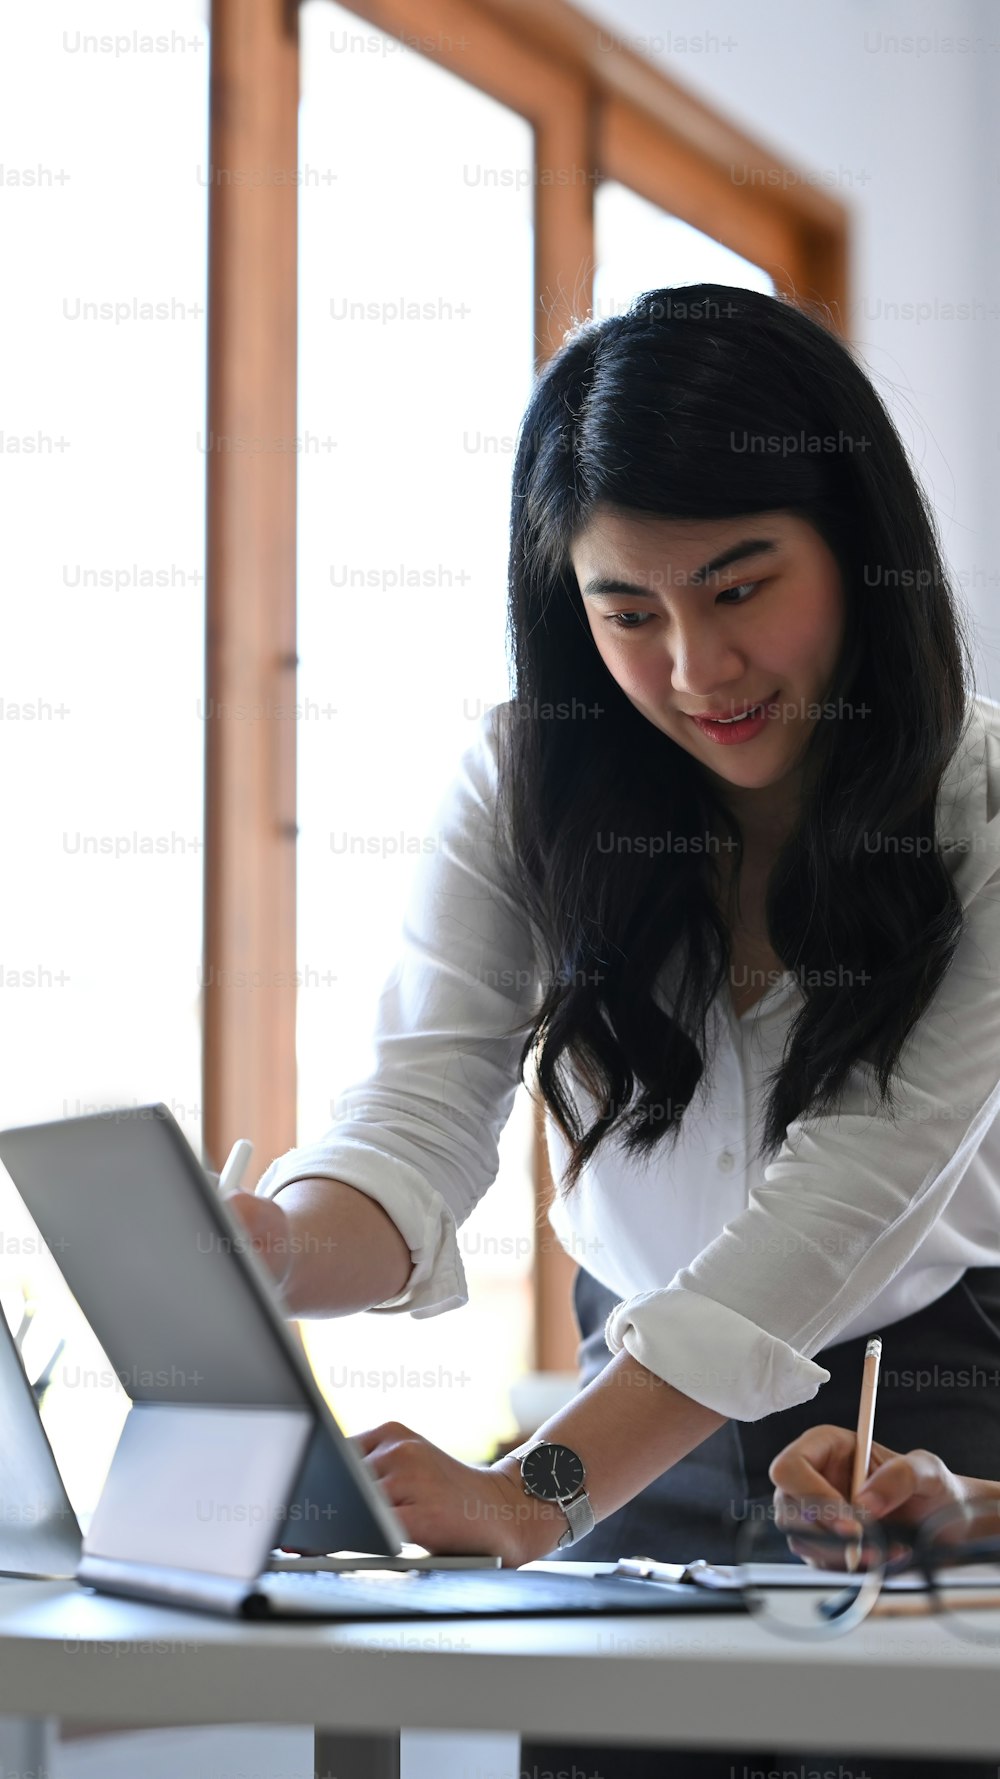 Empresaria asiática compartiendo ideas o plan de negocios de inicio en una tableta de computadora con su colega.